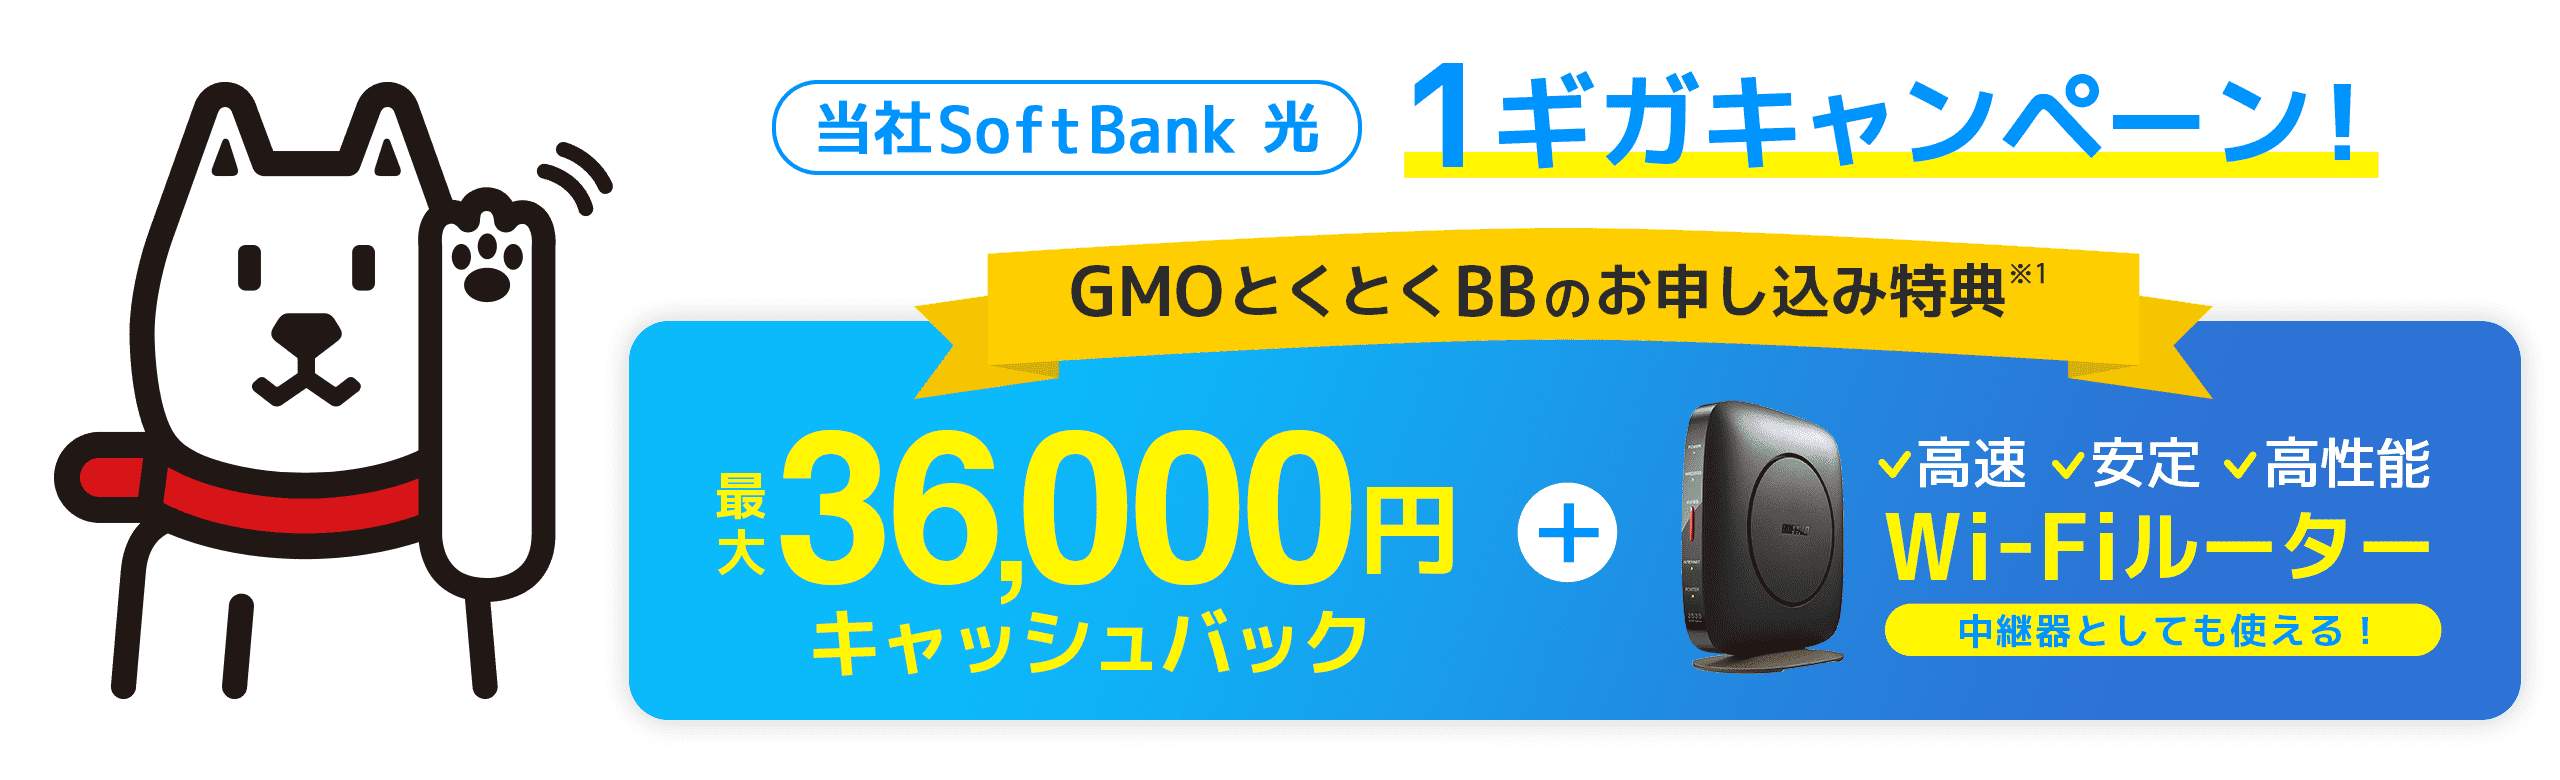 当社SoftBank 光 1ギガキャンペーン